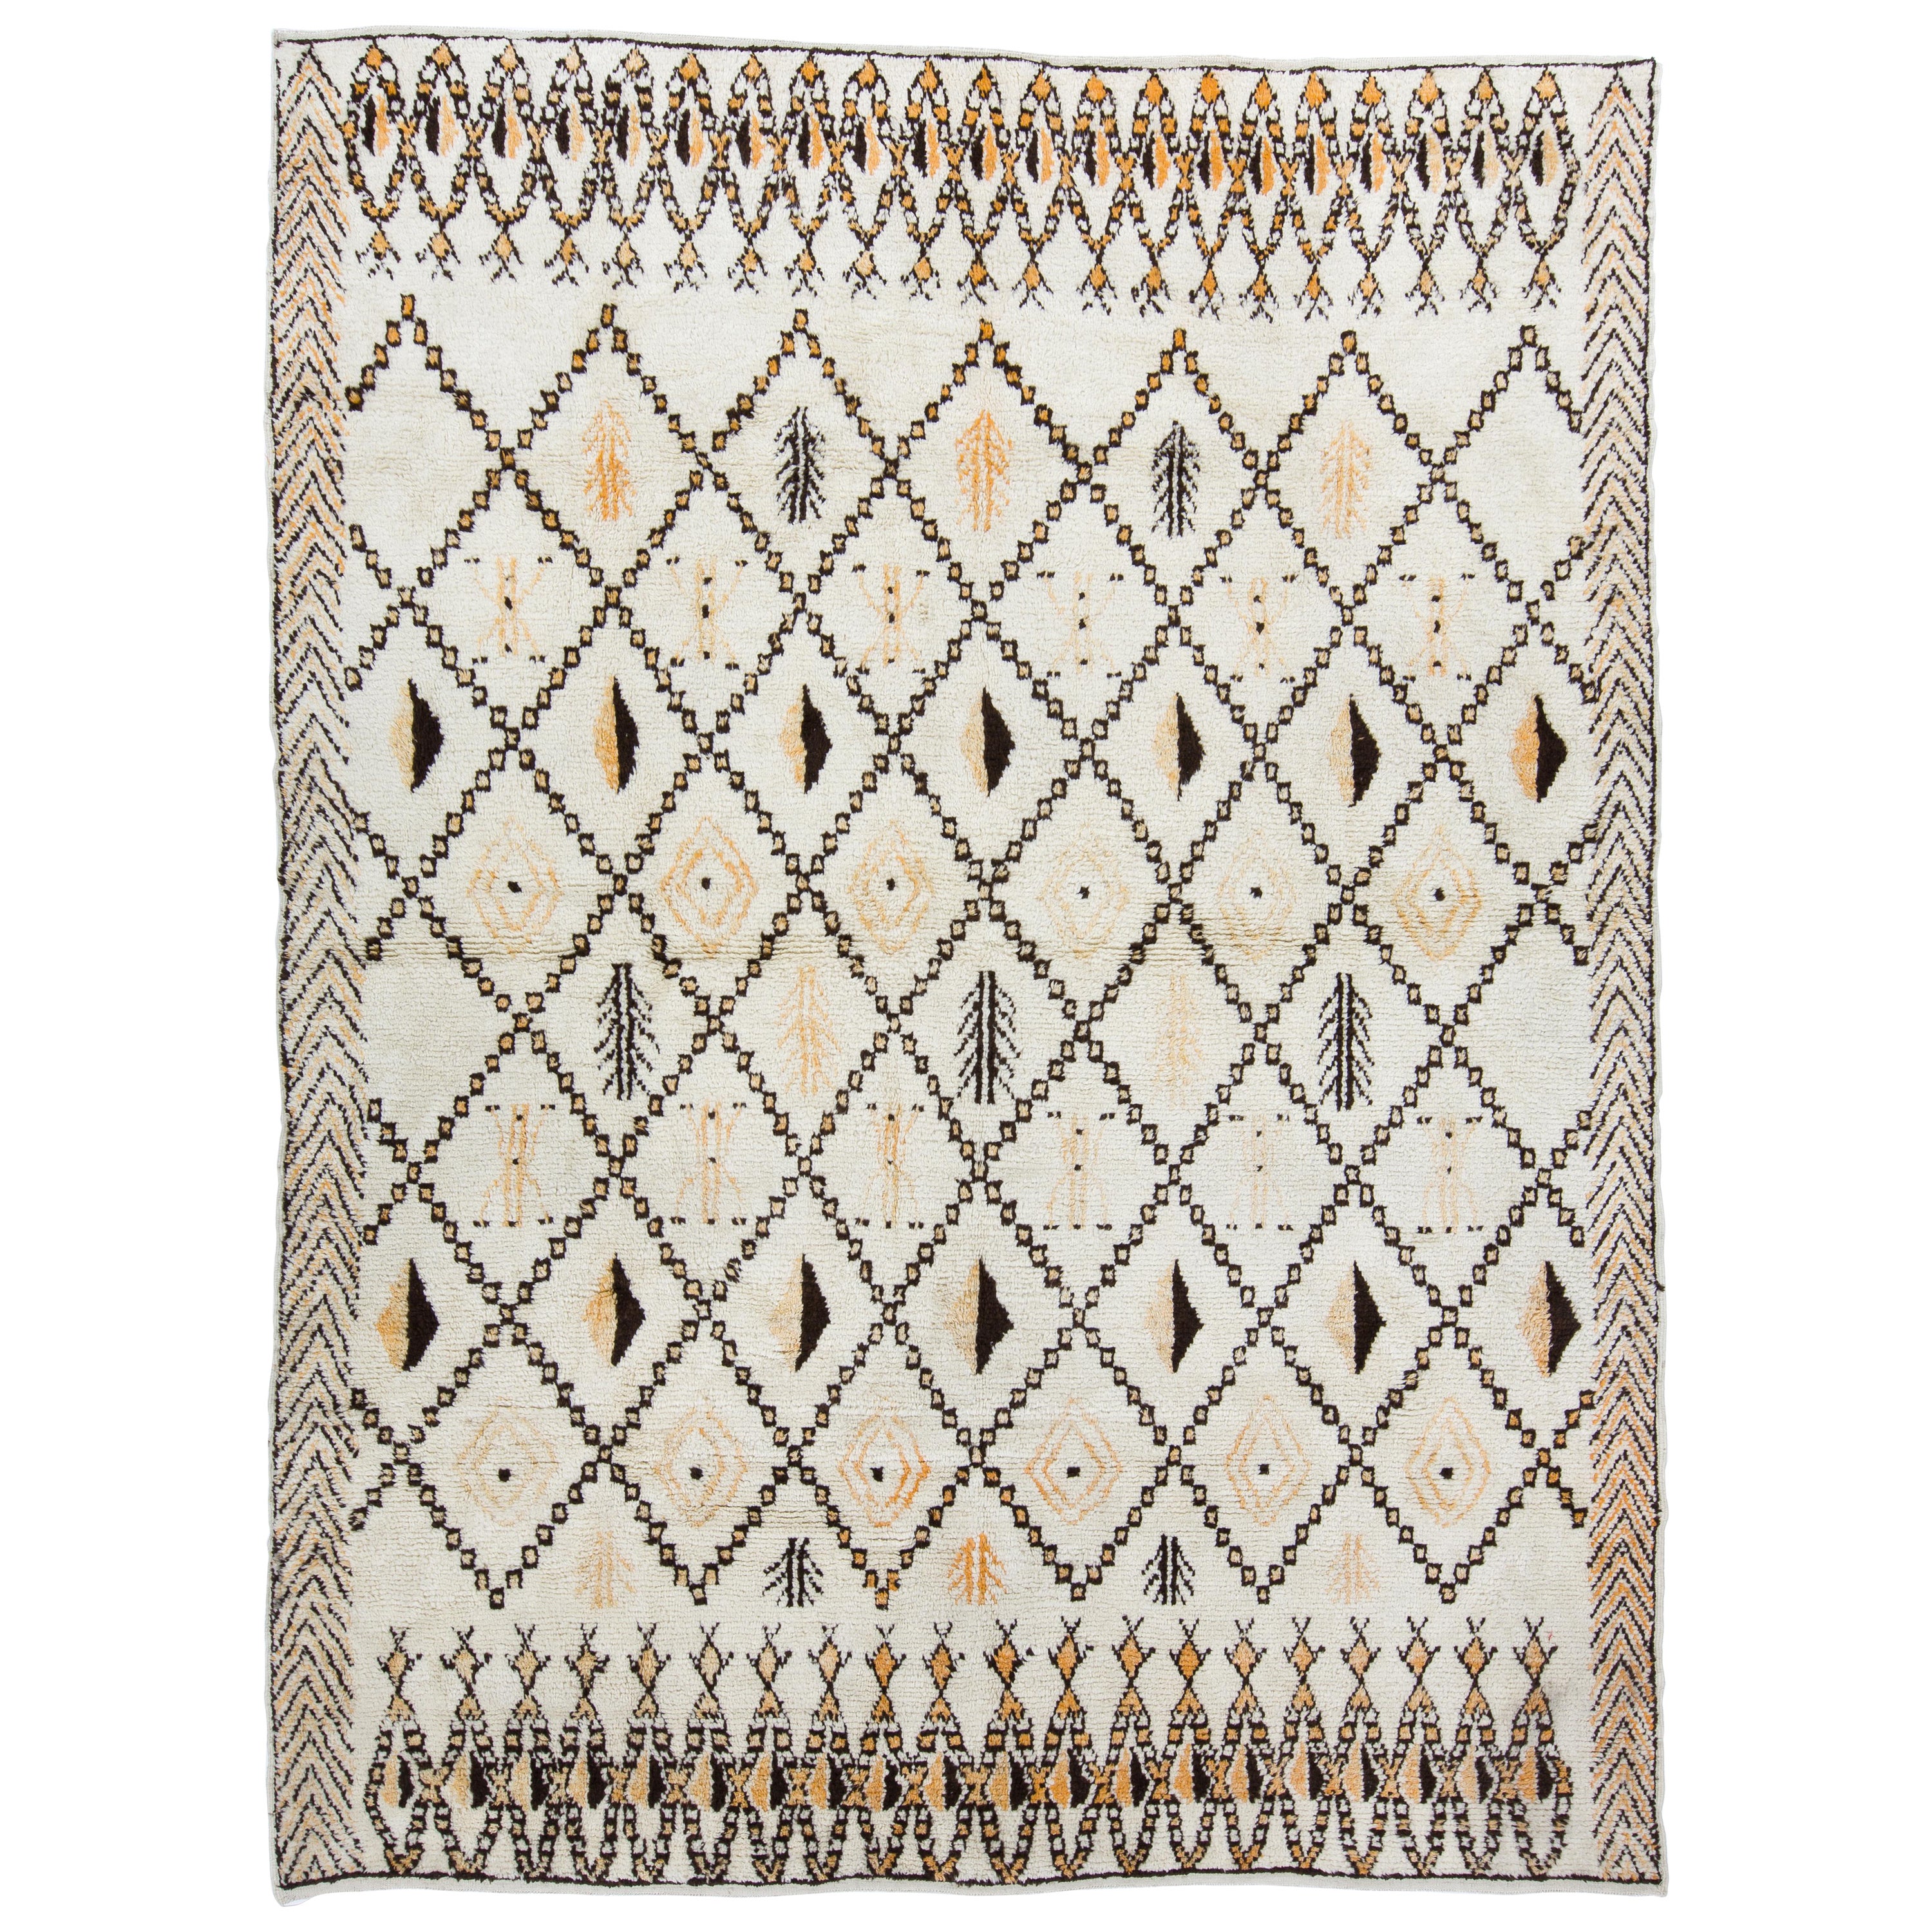 10x14 Fuß Marokkanischer Teppich aus Wolle, großer Tulu-Teppich, maßgefertigt, individuelle Optionen verfügbar